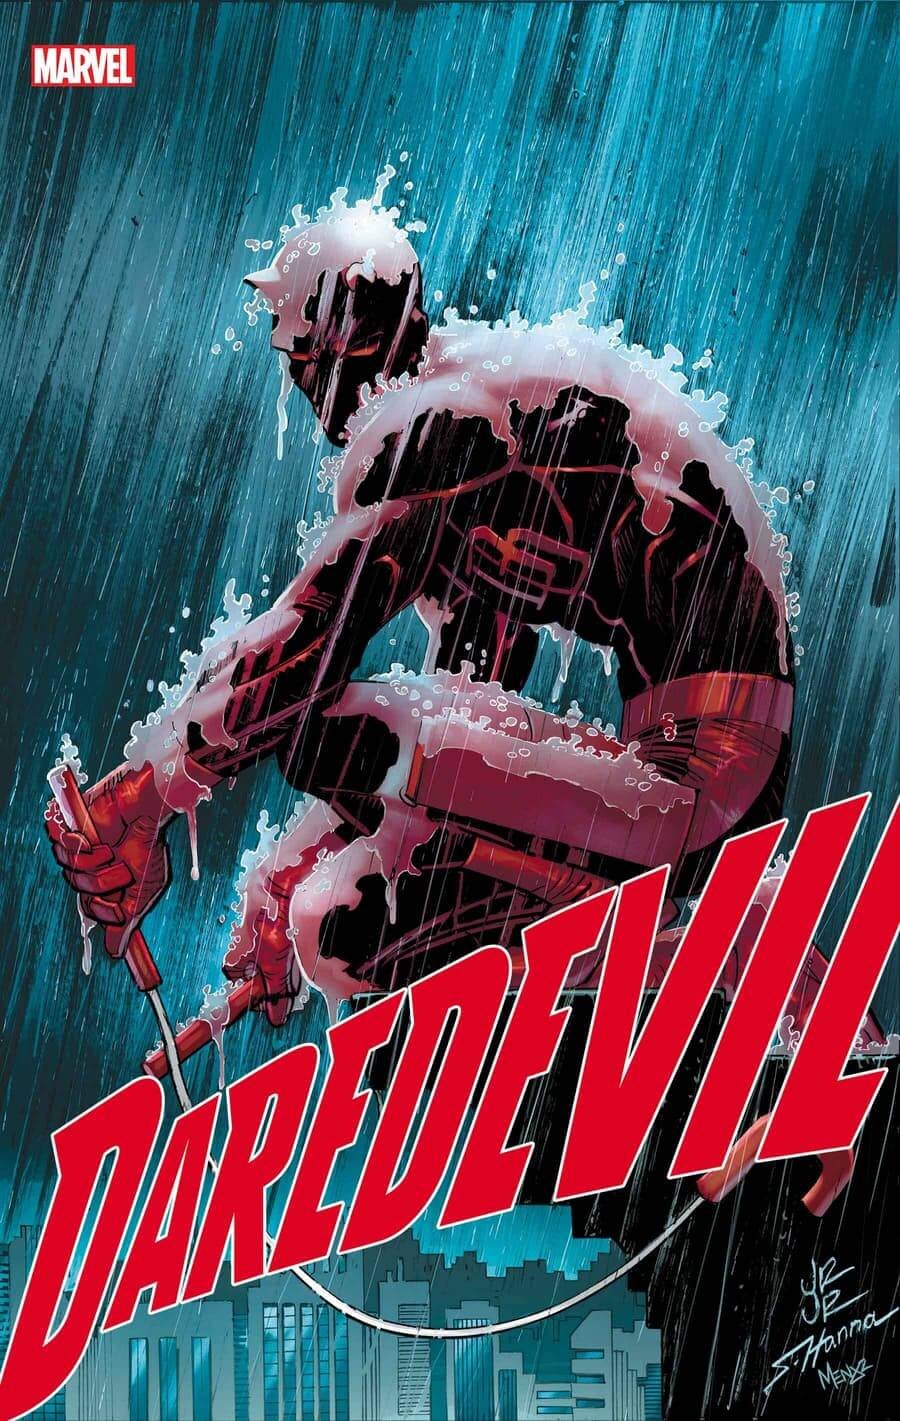 Couverture de Daredevil 1 par John Romita Jr, début de la série de Saladin Ahmed.